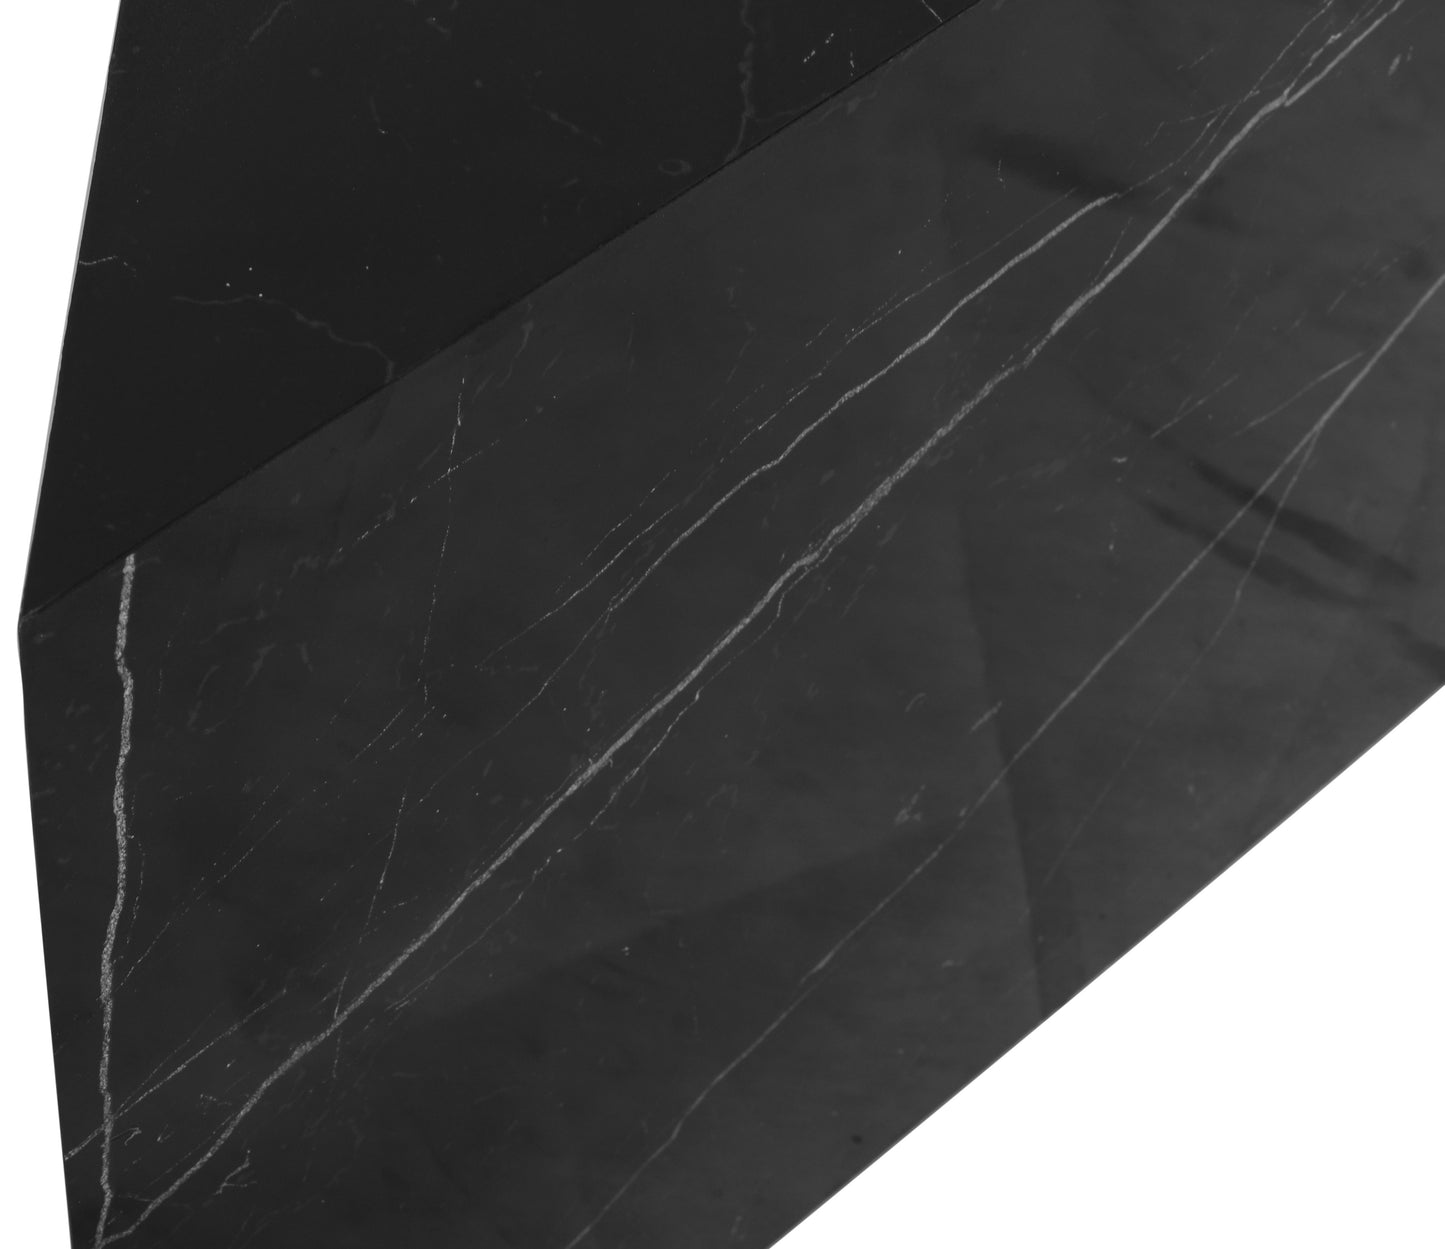 clara black faux marble end table et